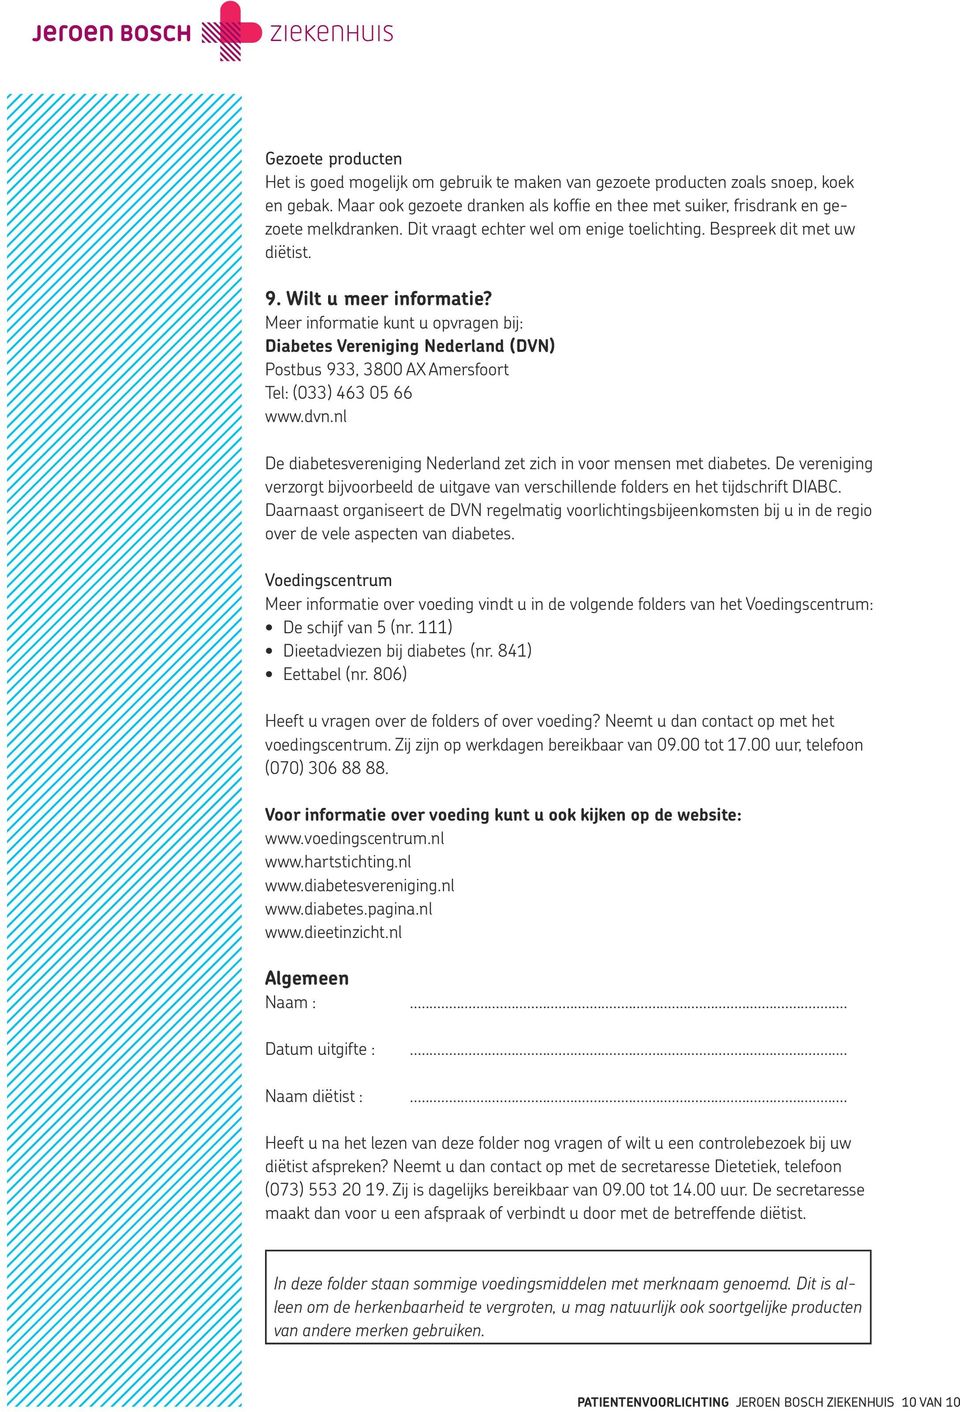 Meer informatie kunt u opvragen bij: Diabetes Vereniging Nederland (DVN) Postbus 933, 3800 AX Amersfoort Tel: (033) 463 05 66 www.dvn.